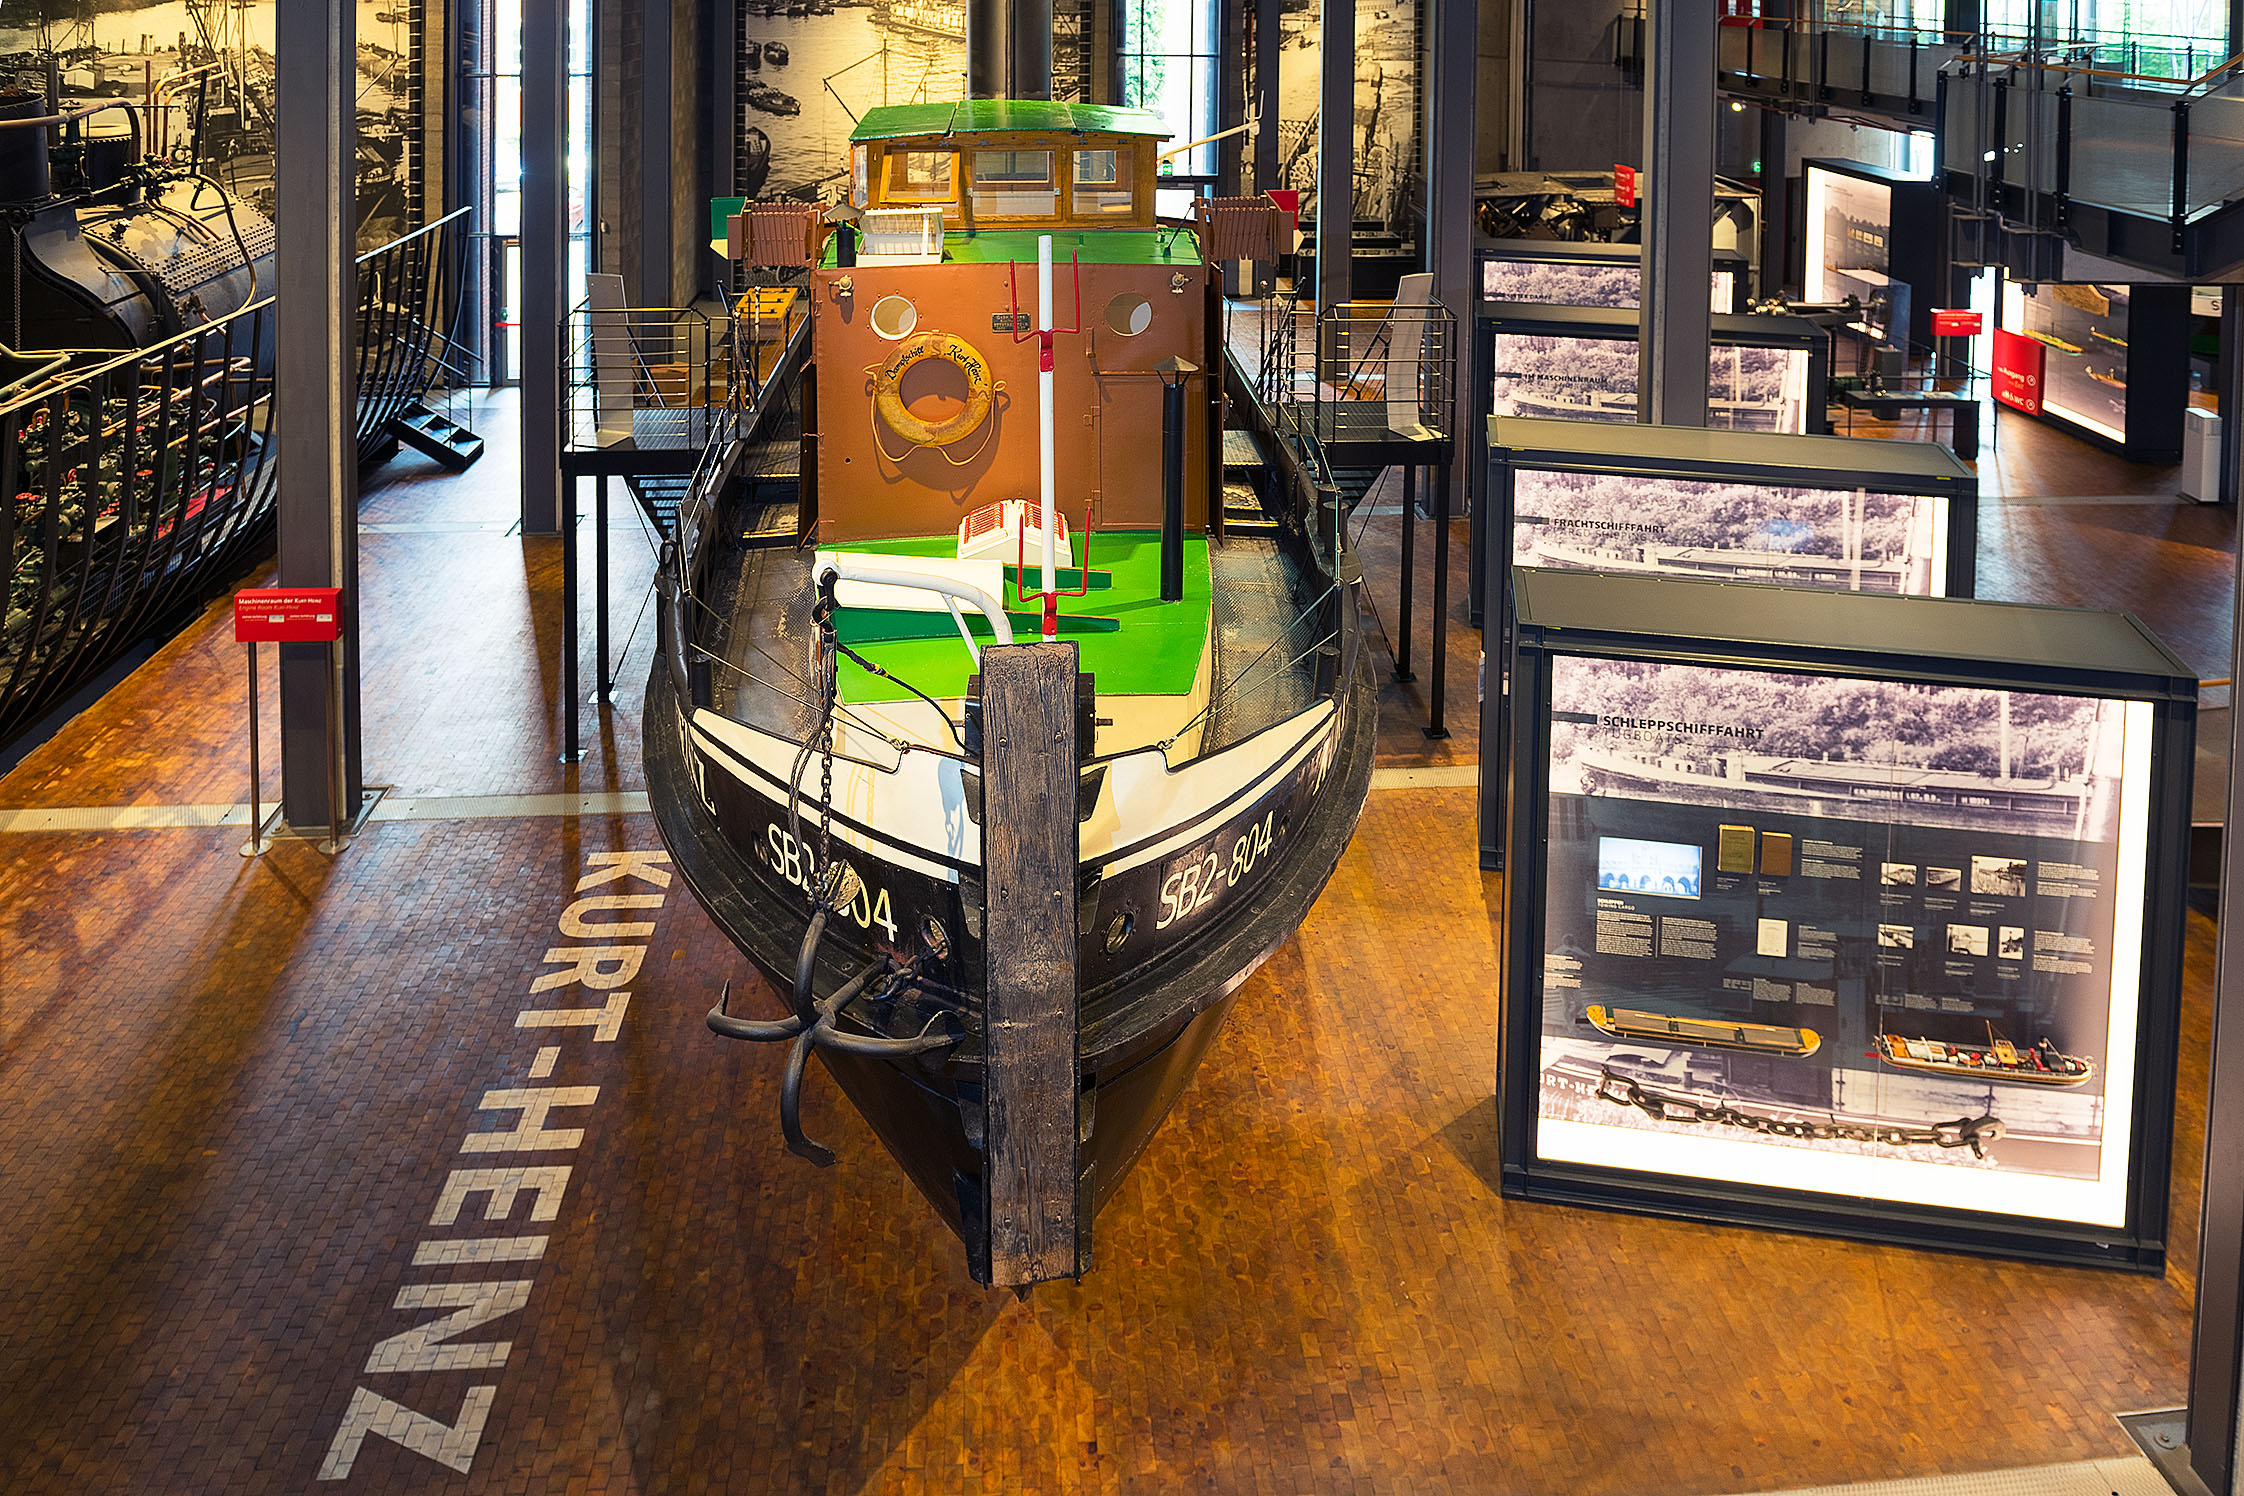 Im Ausstellungsraum steht der Dampfschlepper KURT-HEINZ. Links daneben ist die Bodenbeschriftung angebracht, rechts stehen mehrere große Leuchtvitrinen hintereinander.